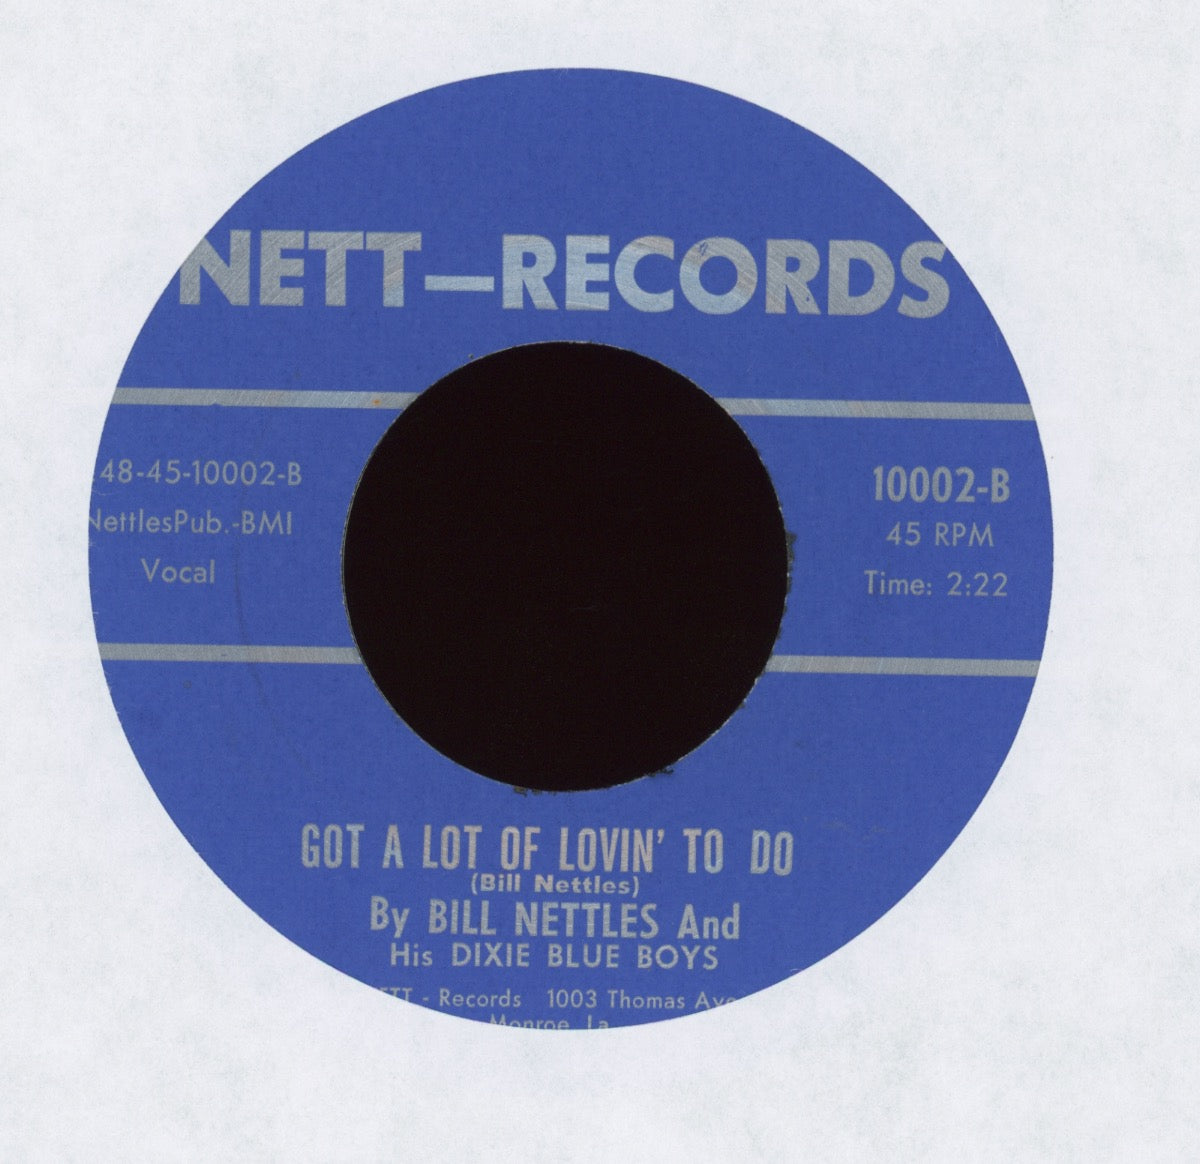 Bill Nettles And His Dixie Blue Boys - Got A Lot Of Lovin' To Do on Nett